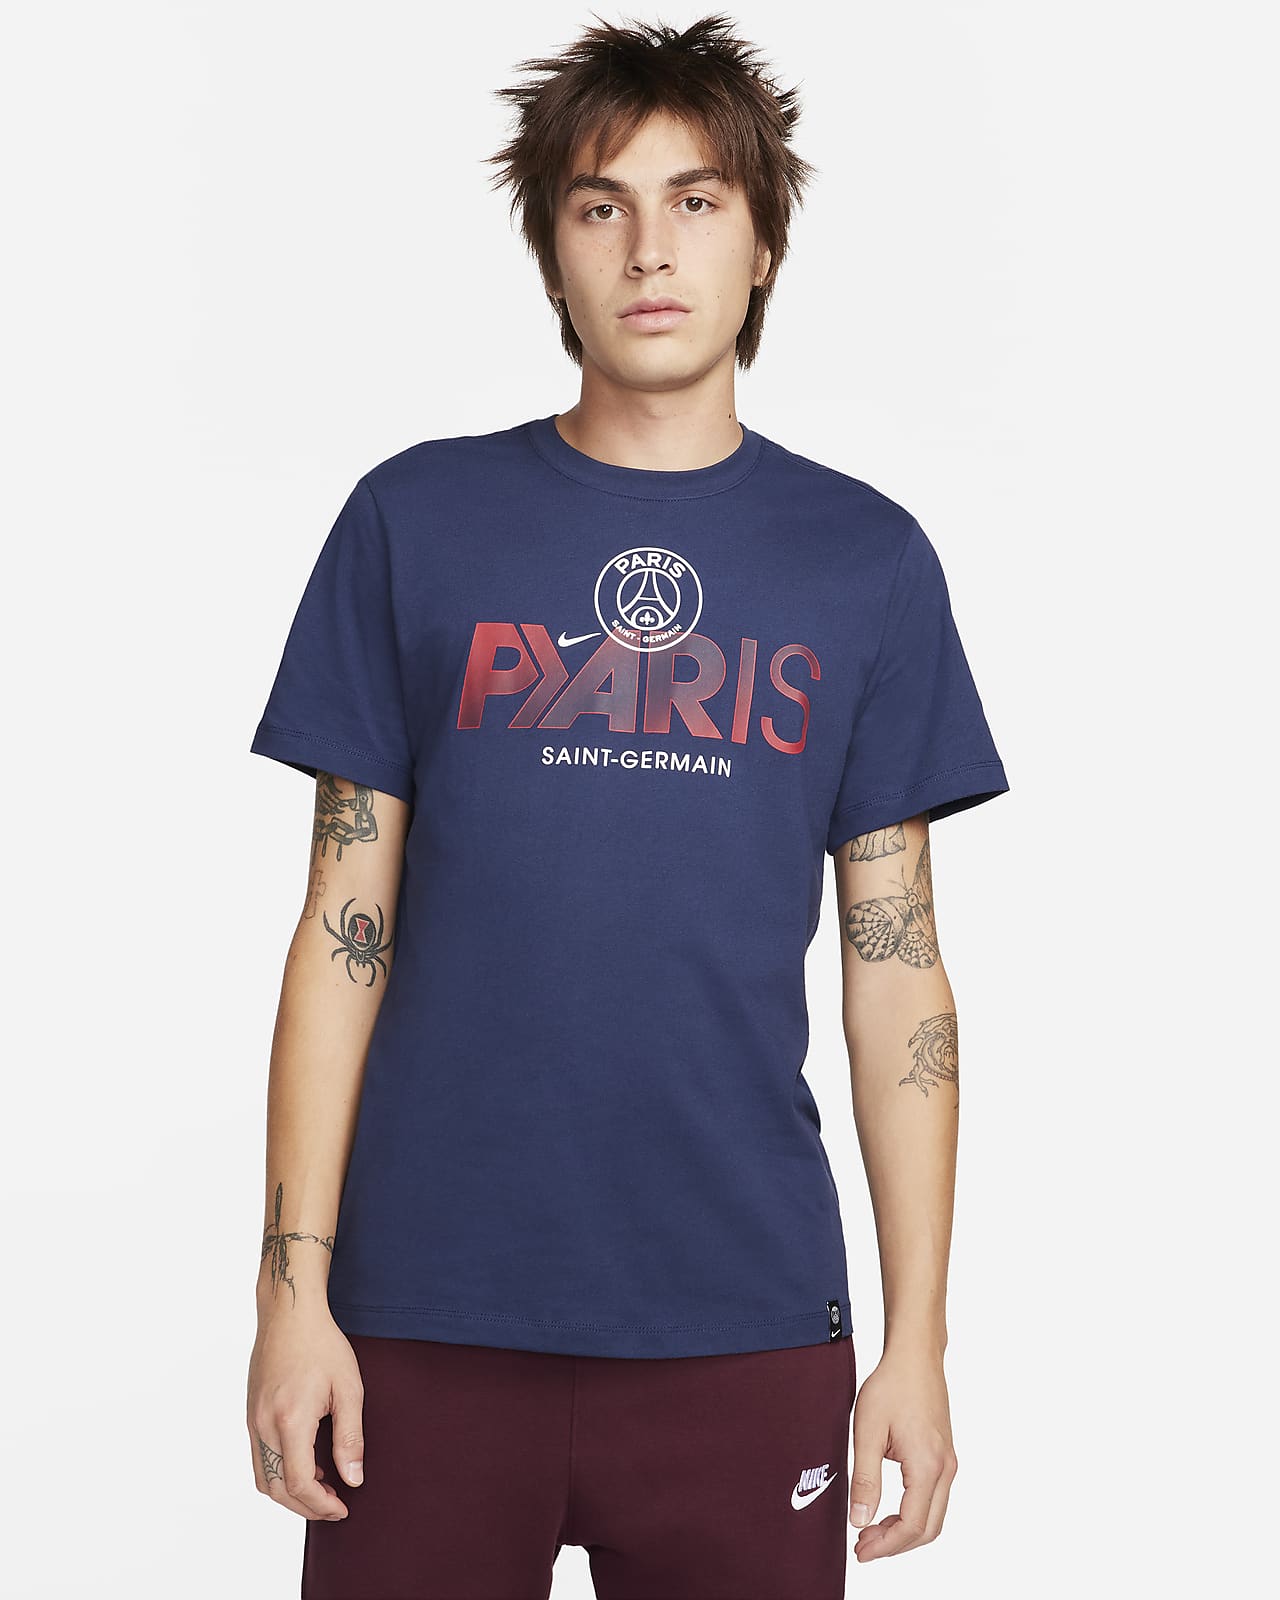 Paris Saint-Germain Mercurial Men's Nike Soccer T-Shirt